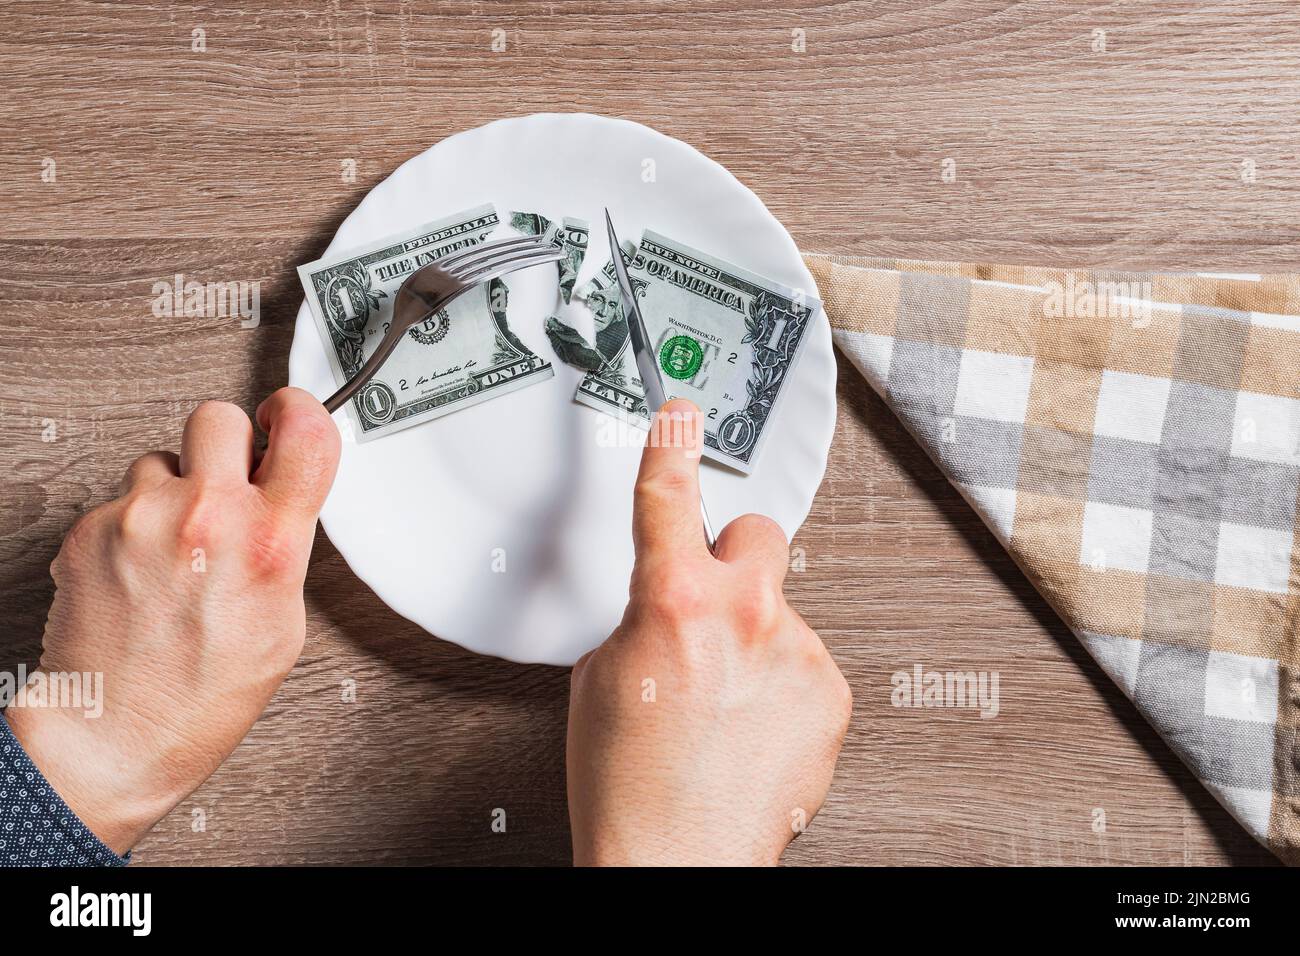 Mains d'une personne inconnue coupant une facture de dollar dans une assiette avec couteau et fourchette. Il est sur une table en bois et à côté il y a une serviette en tissu. Banque D'Images